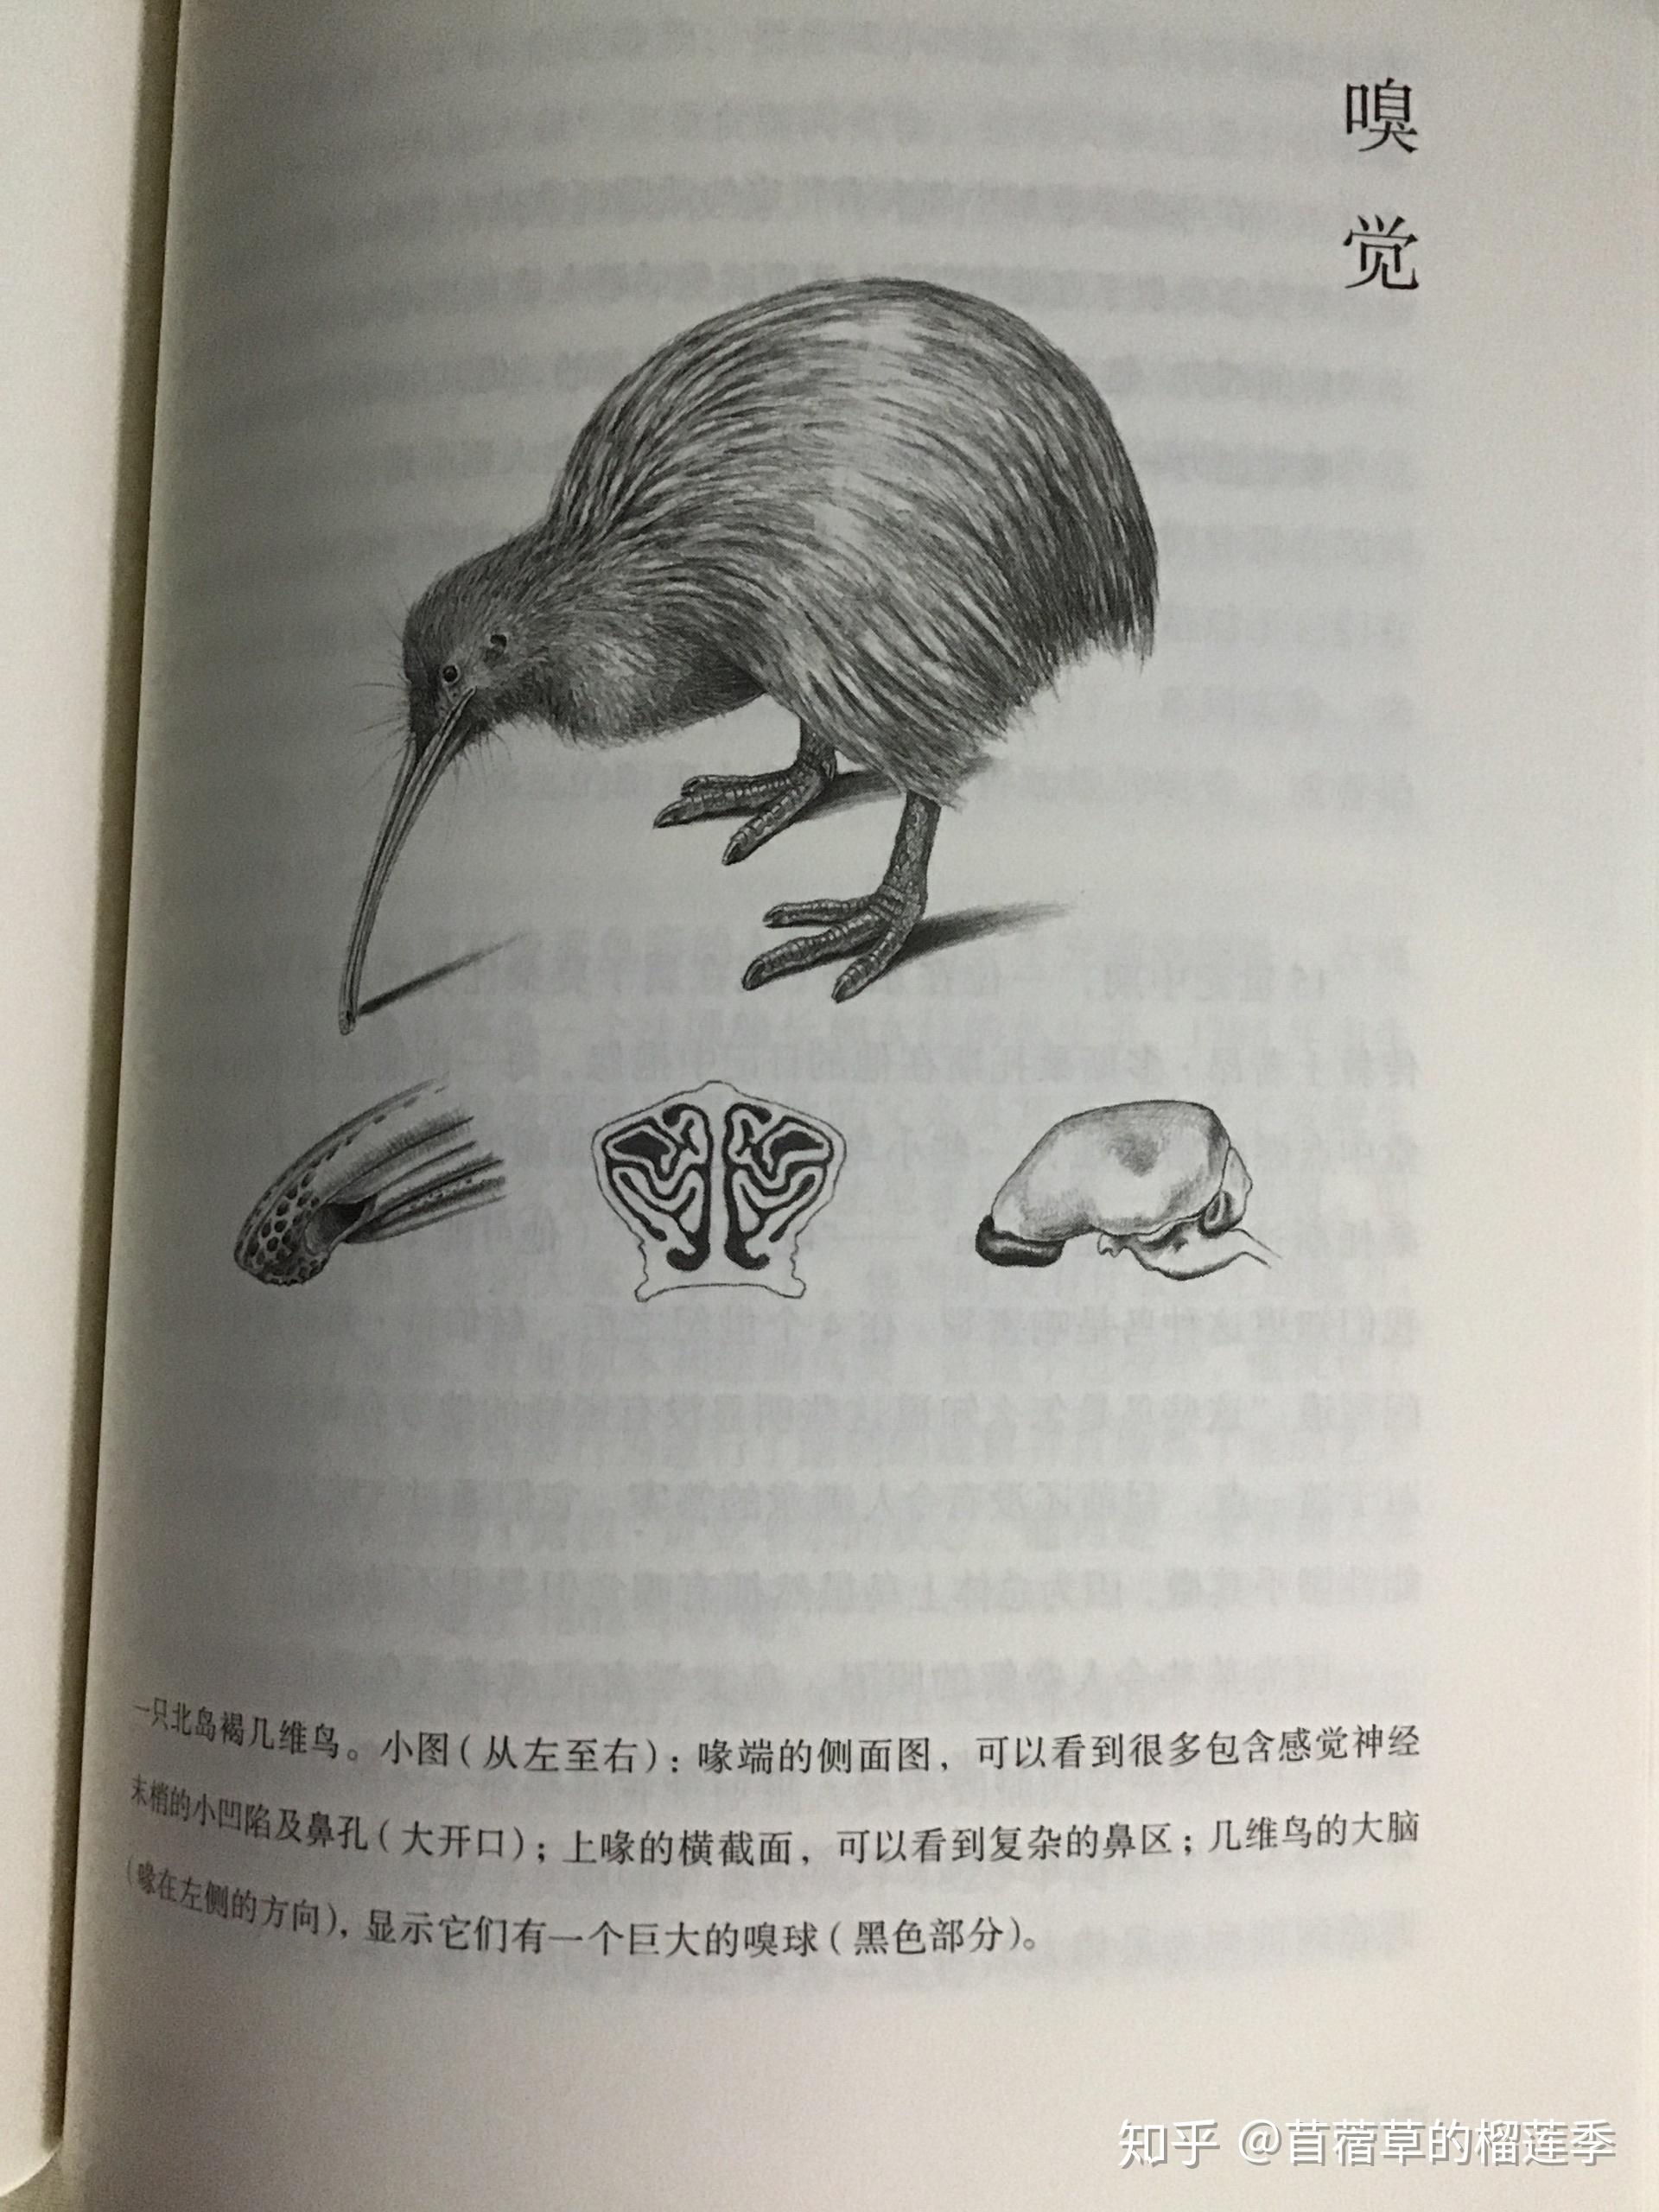 Amazon.co.jp: 動物および家禽の解剖学的モデル、家禽の解剖学的モデル、畜産器官内臓筋神経家禽および家禽動物の解剖学を学ぶ動物 : 本